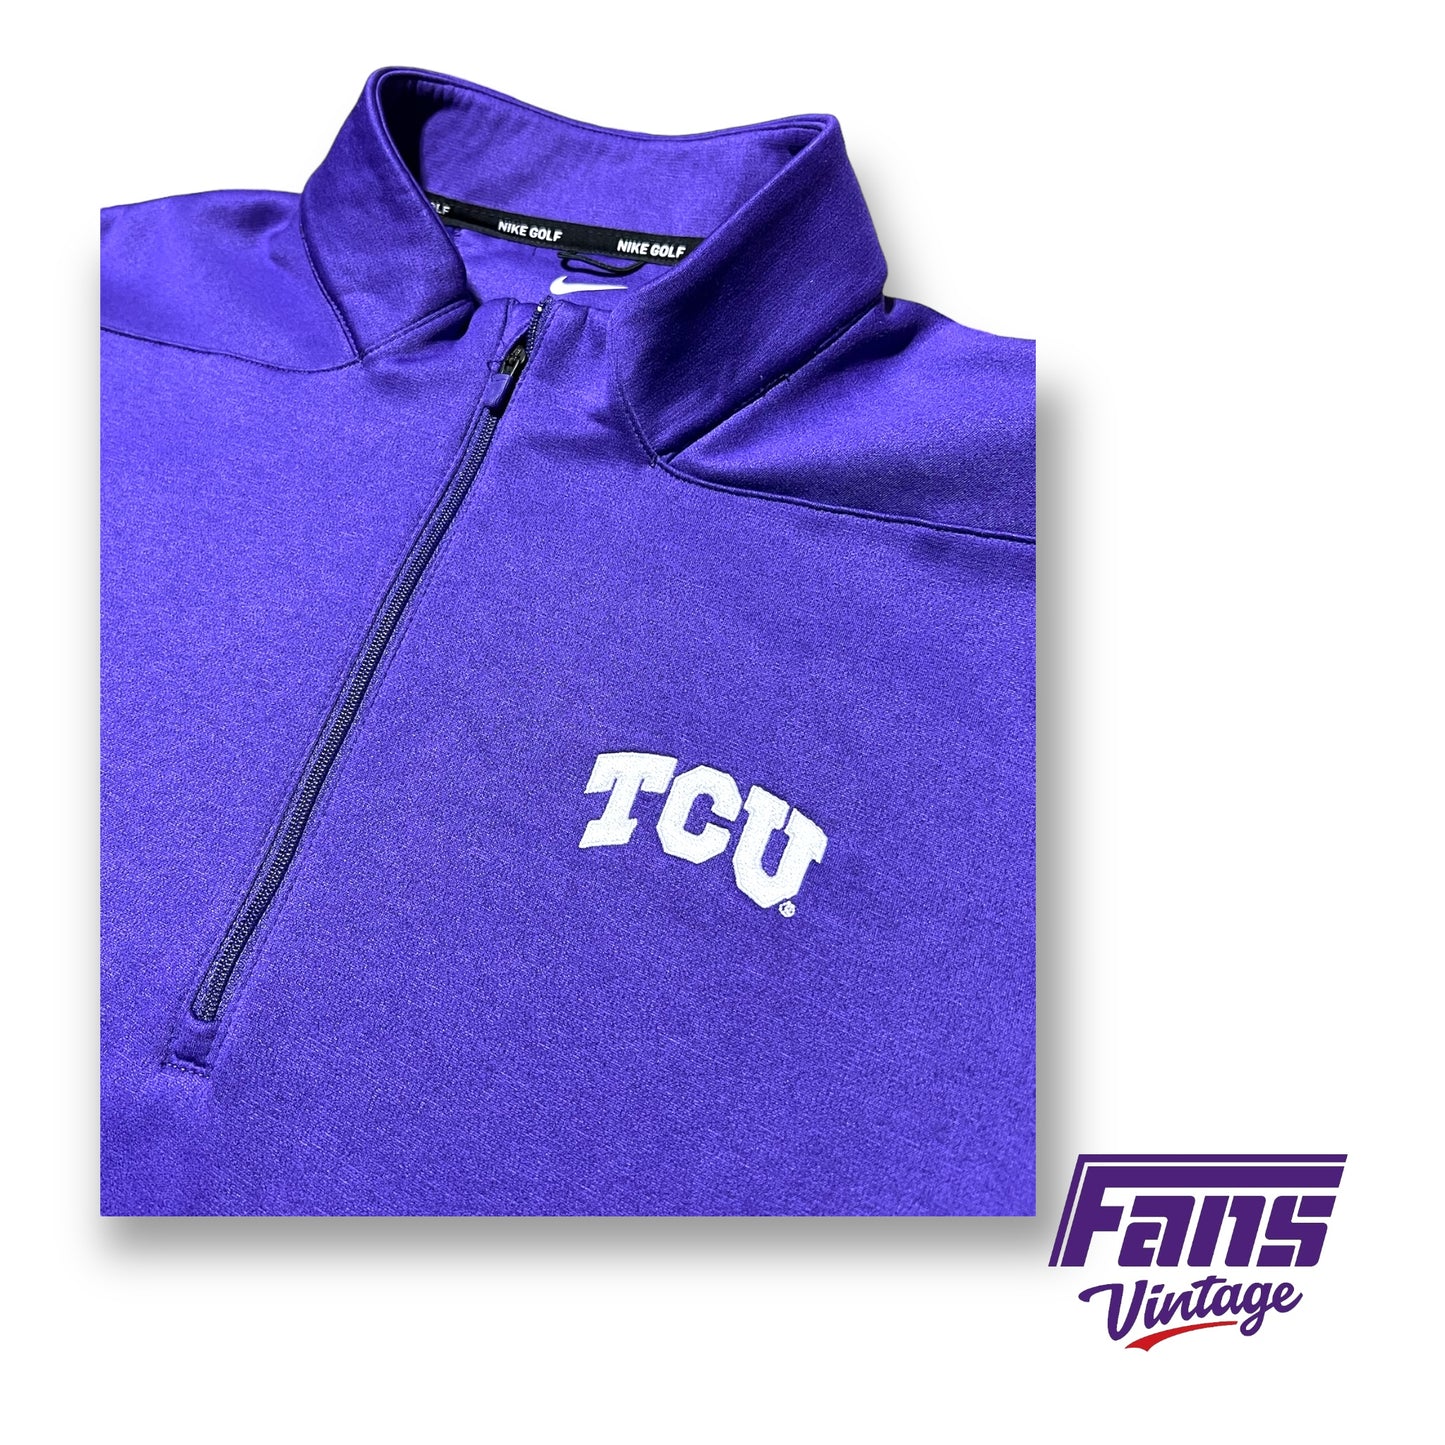 TCU Team Issue Coach’s Nike Golf Quarter zip Pullover